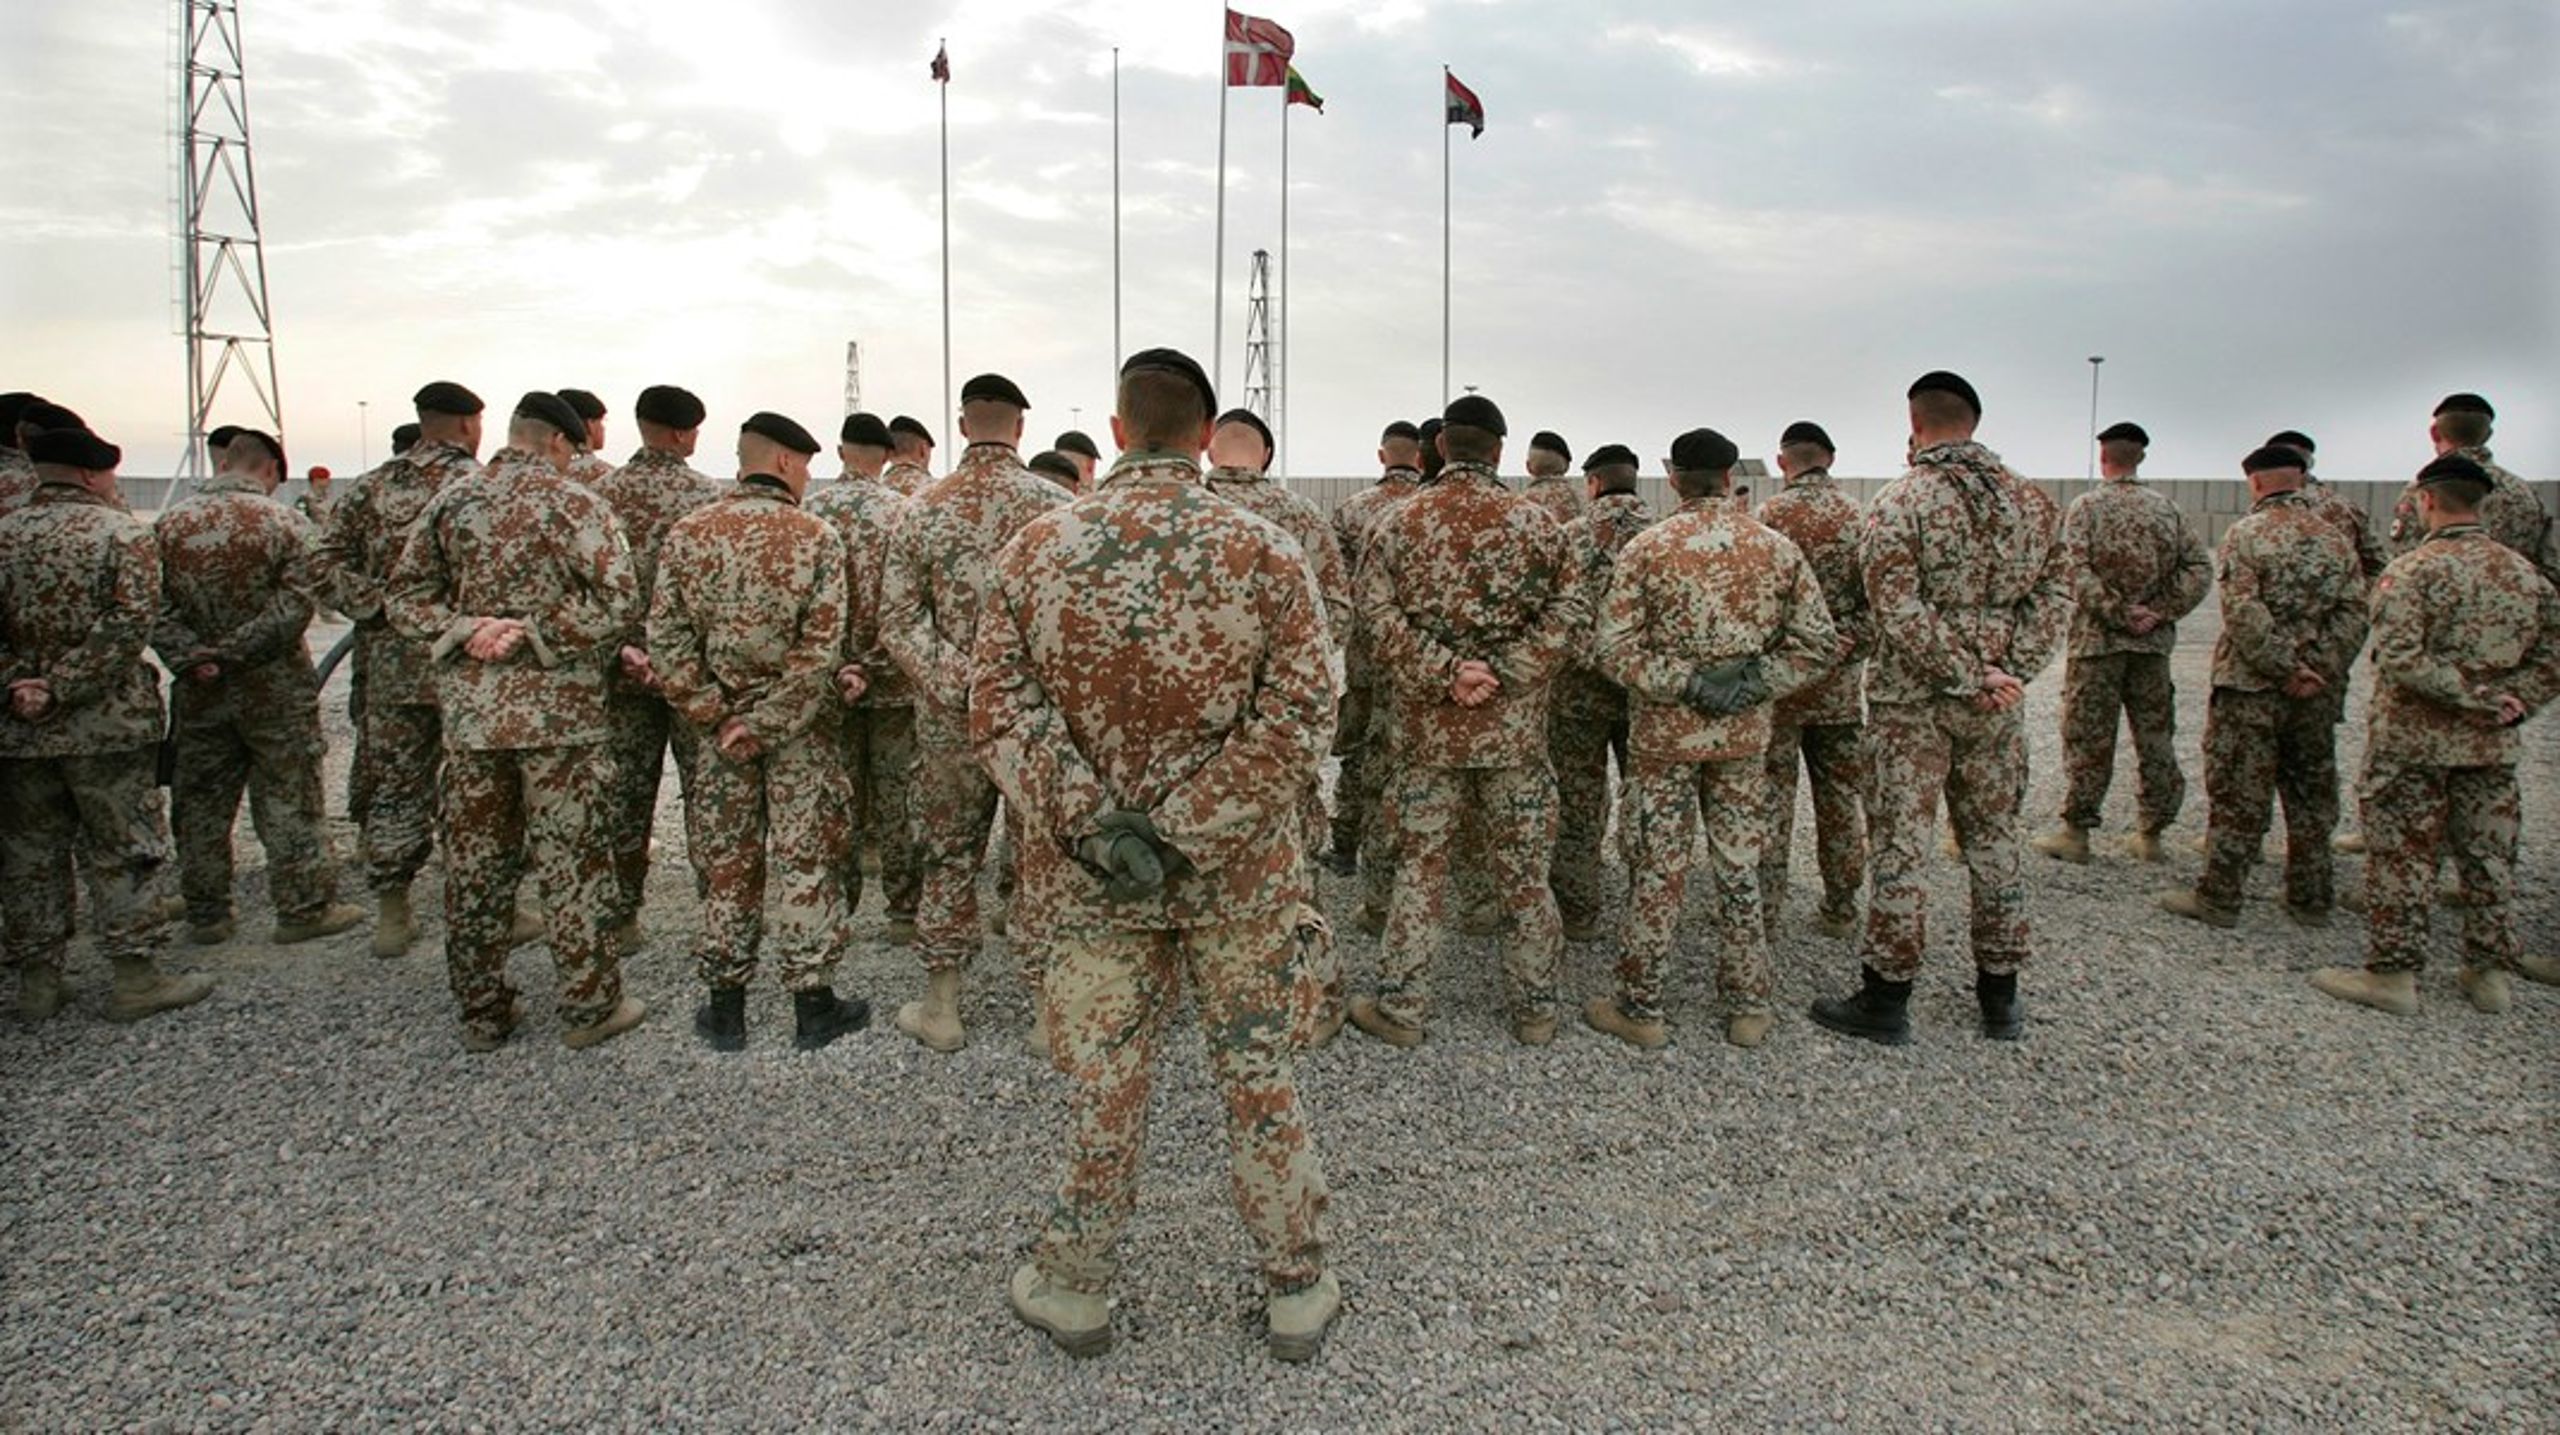 Ti procent af de danske udsendte soldater udvikler PTSD efter hjemkomsten, skriver Dorte<b>&nbsp;</b>Nørregaard.